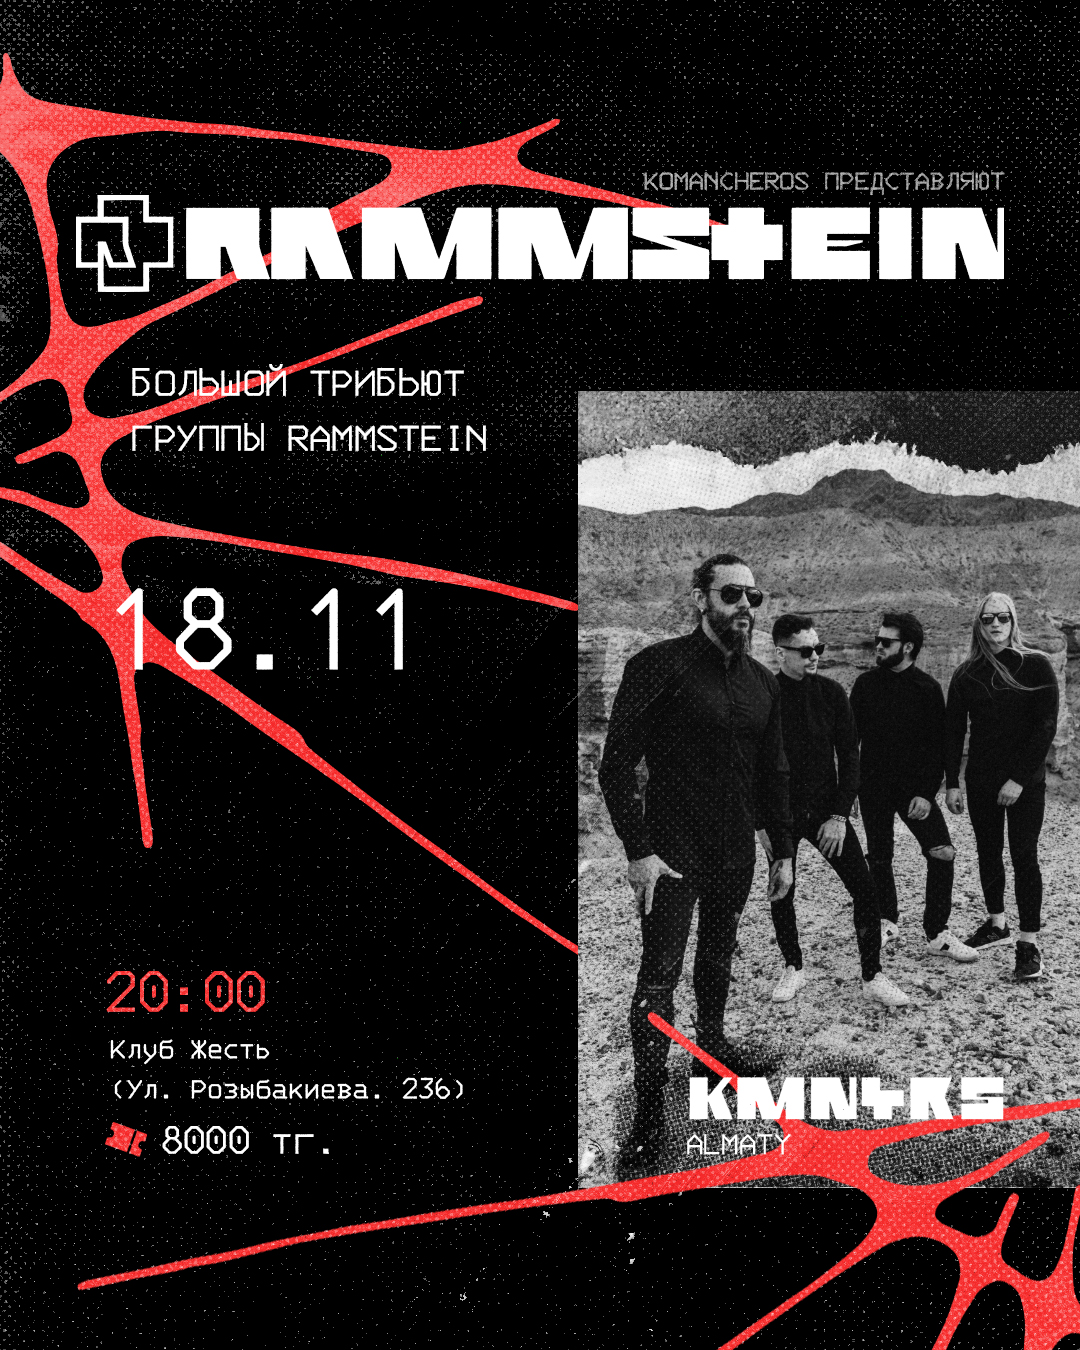 Афиша меропрития: Komancheros - Большой трибьют группы Rammstein